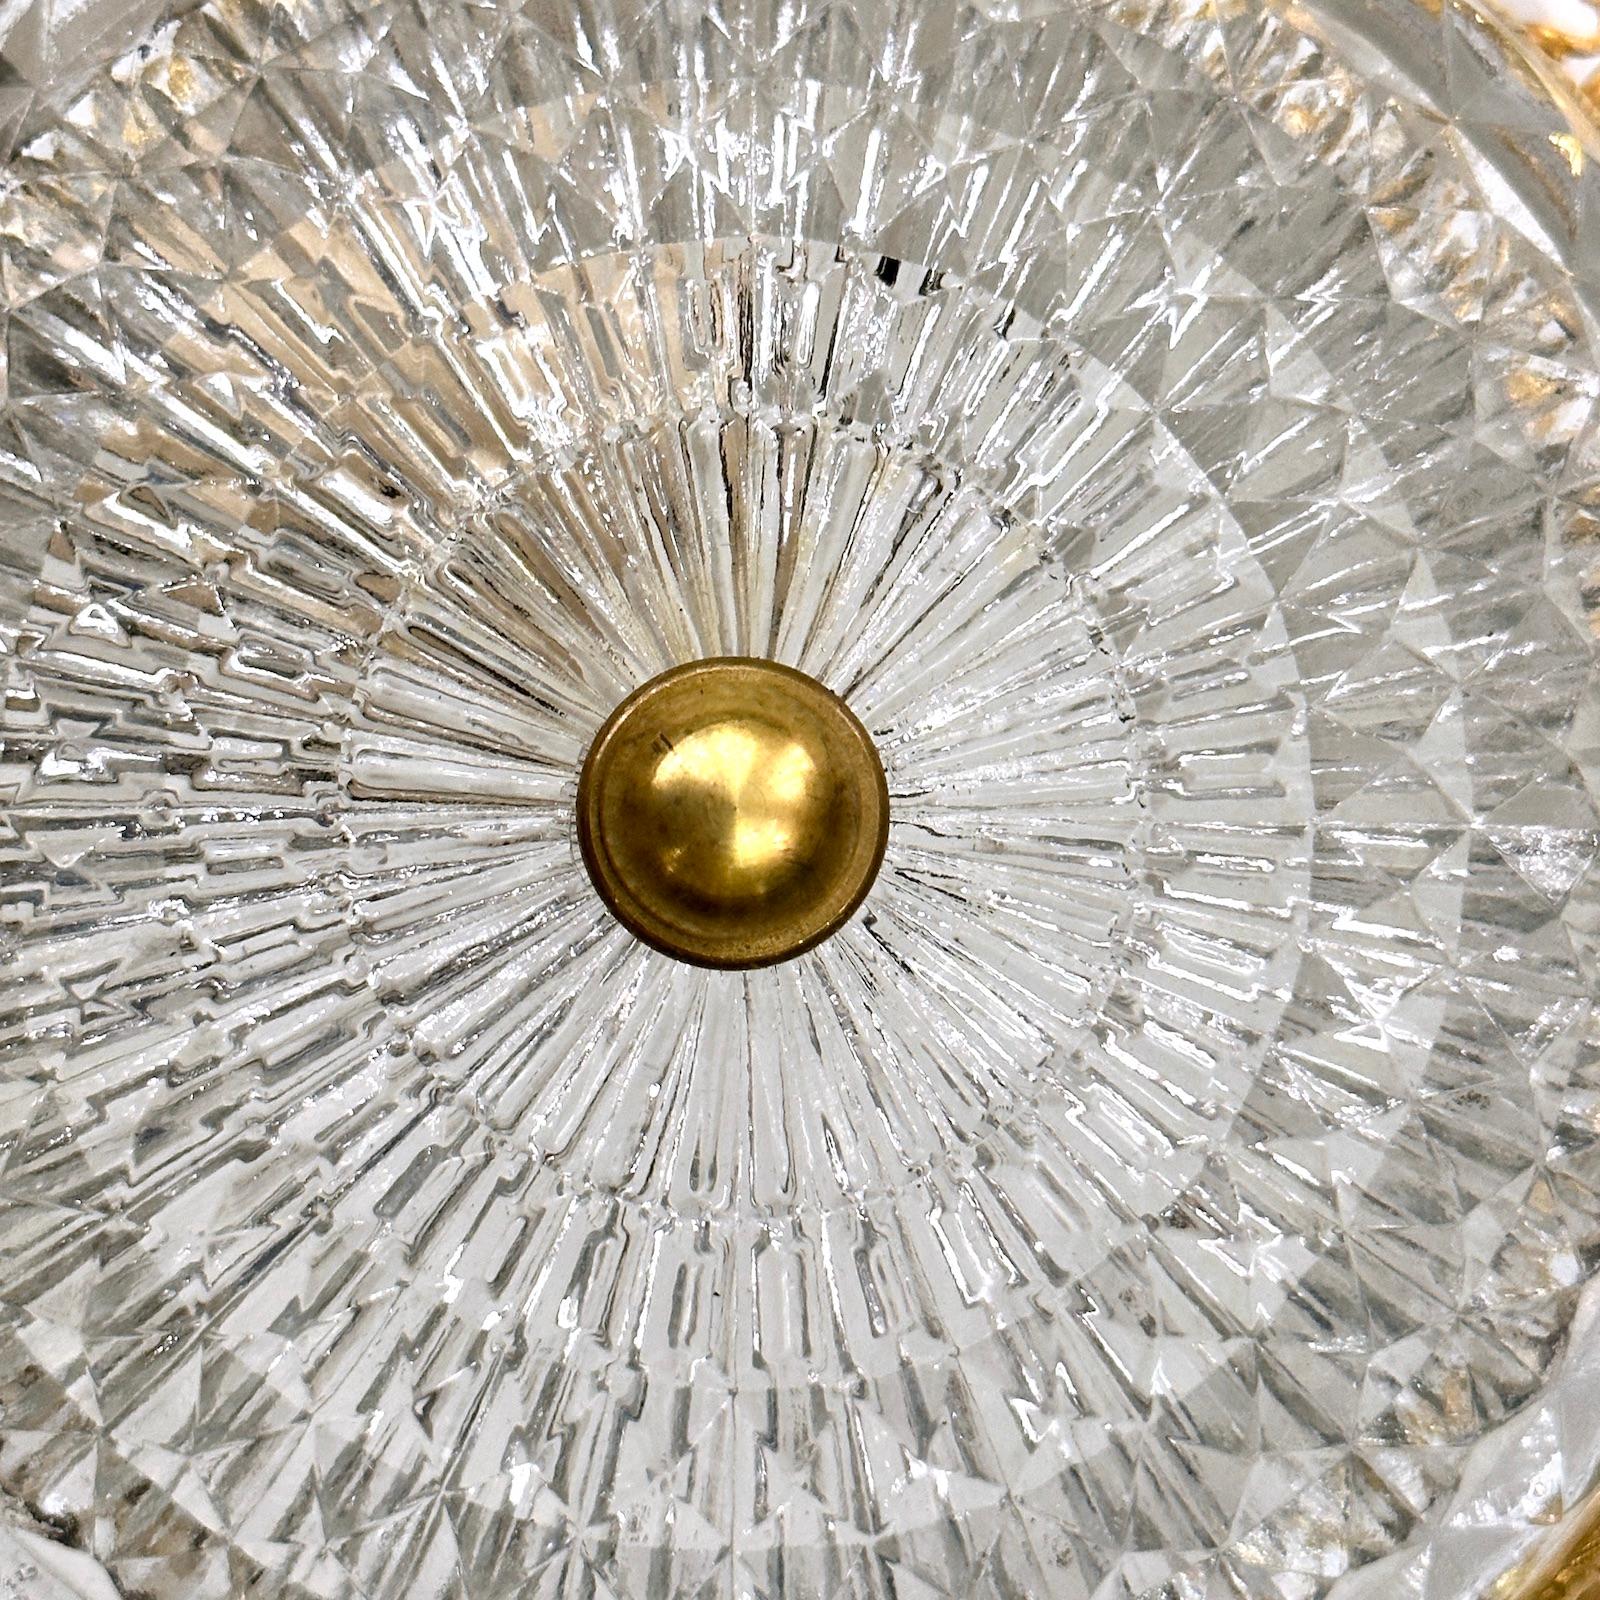 Un luminaire en cristal taillé français des années 1950 avec 1 lumière intérieure.

Mesures :
Chute : 3